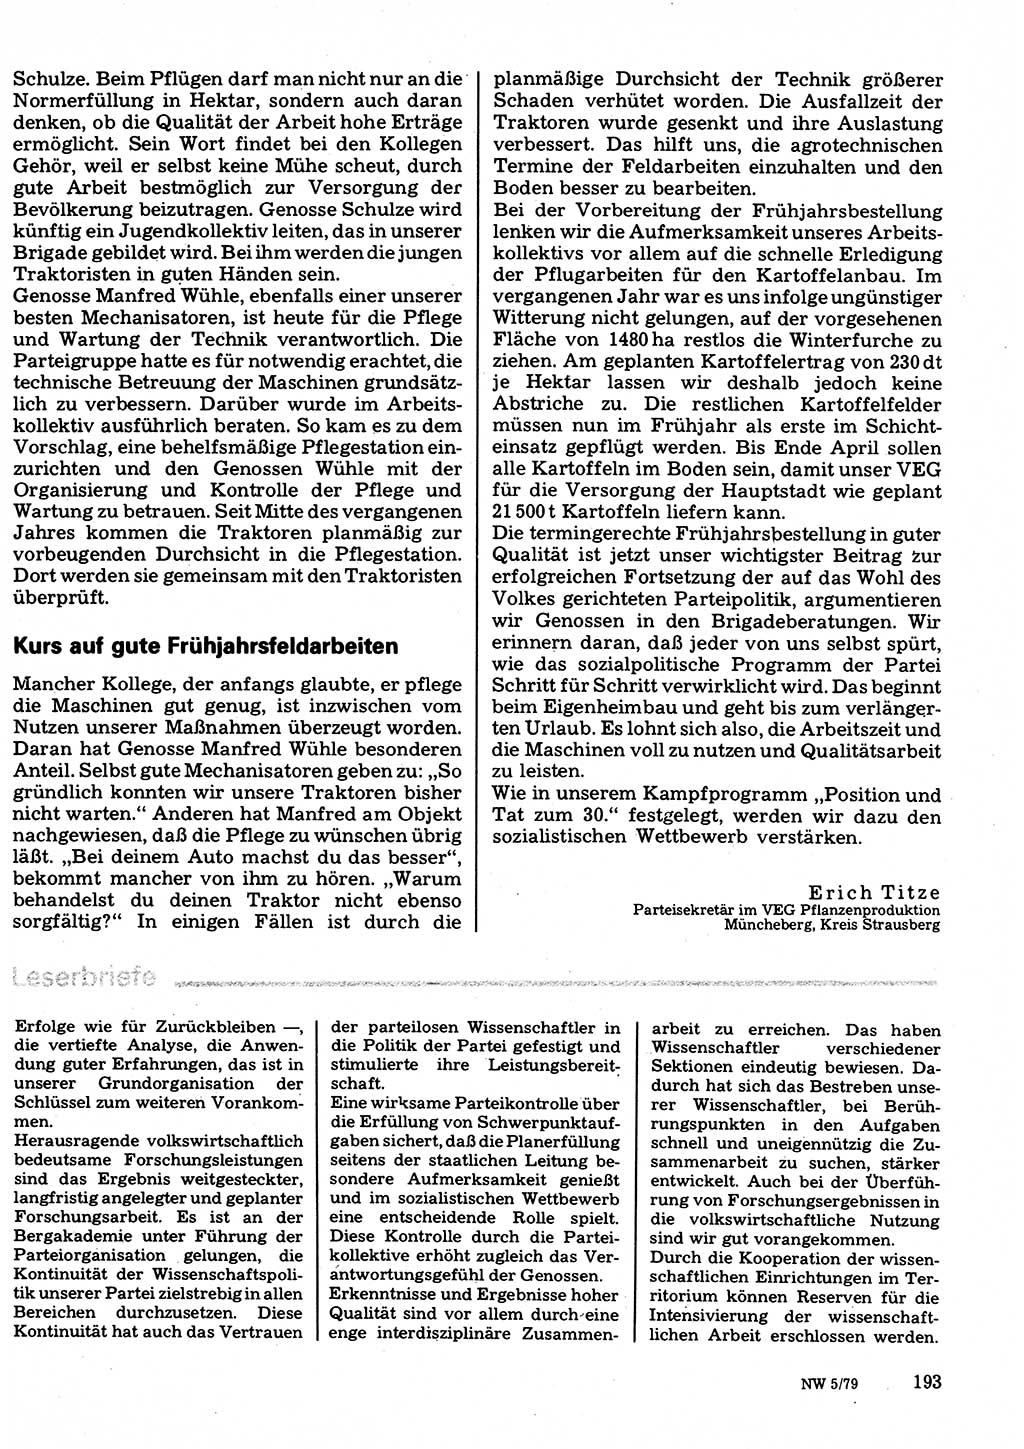 Neuer Weg (NW), Organ des Zentralkomitees (ZK) der SED (Sozialistische Einheitspartei Deutschlands) für Fragen des Parteilebens, 34. Jahrgang [Deutsche Demokratische Republik (DDR)] 1979, Seite 193 (NW ZK SED DDR 1979, S. 193)